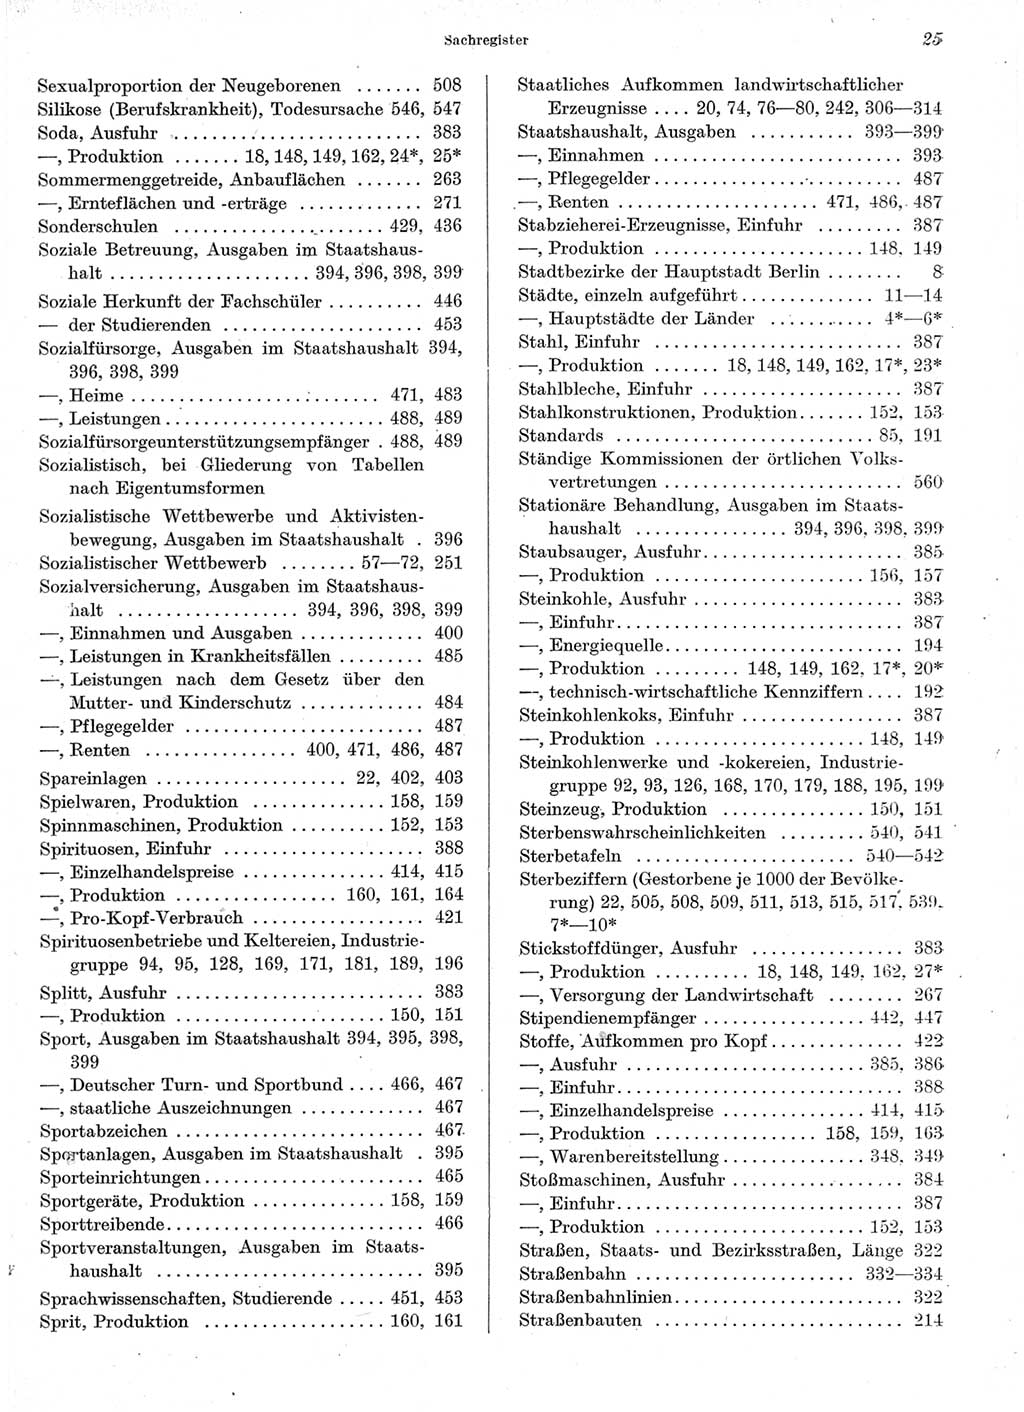 Statistisches Jahrbuch der Deutschen Demokratischen Republik (DDR) 1964, Seite 25 (Stat. Jb. DDR 1964, S. 25)